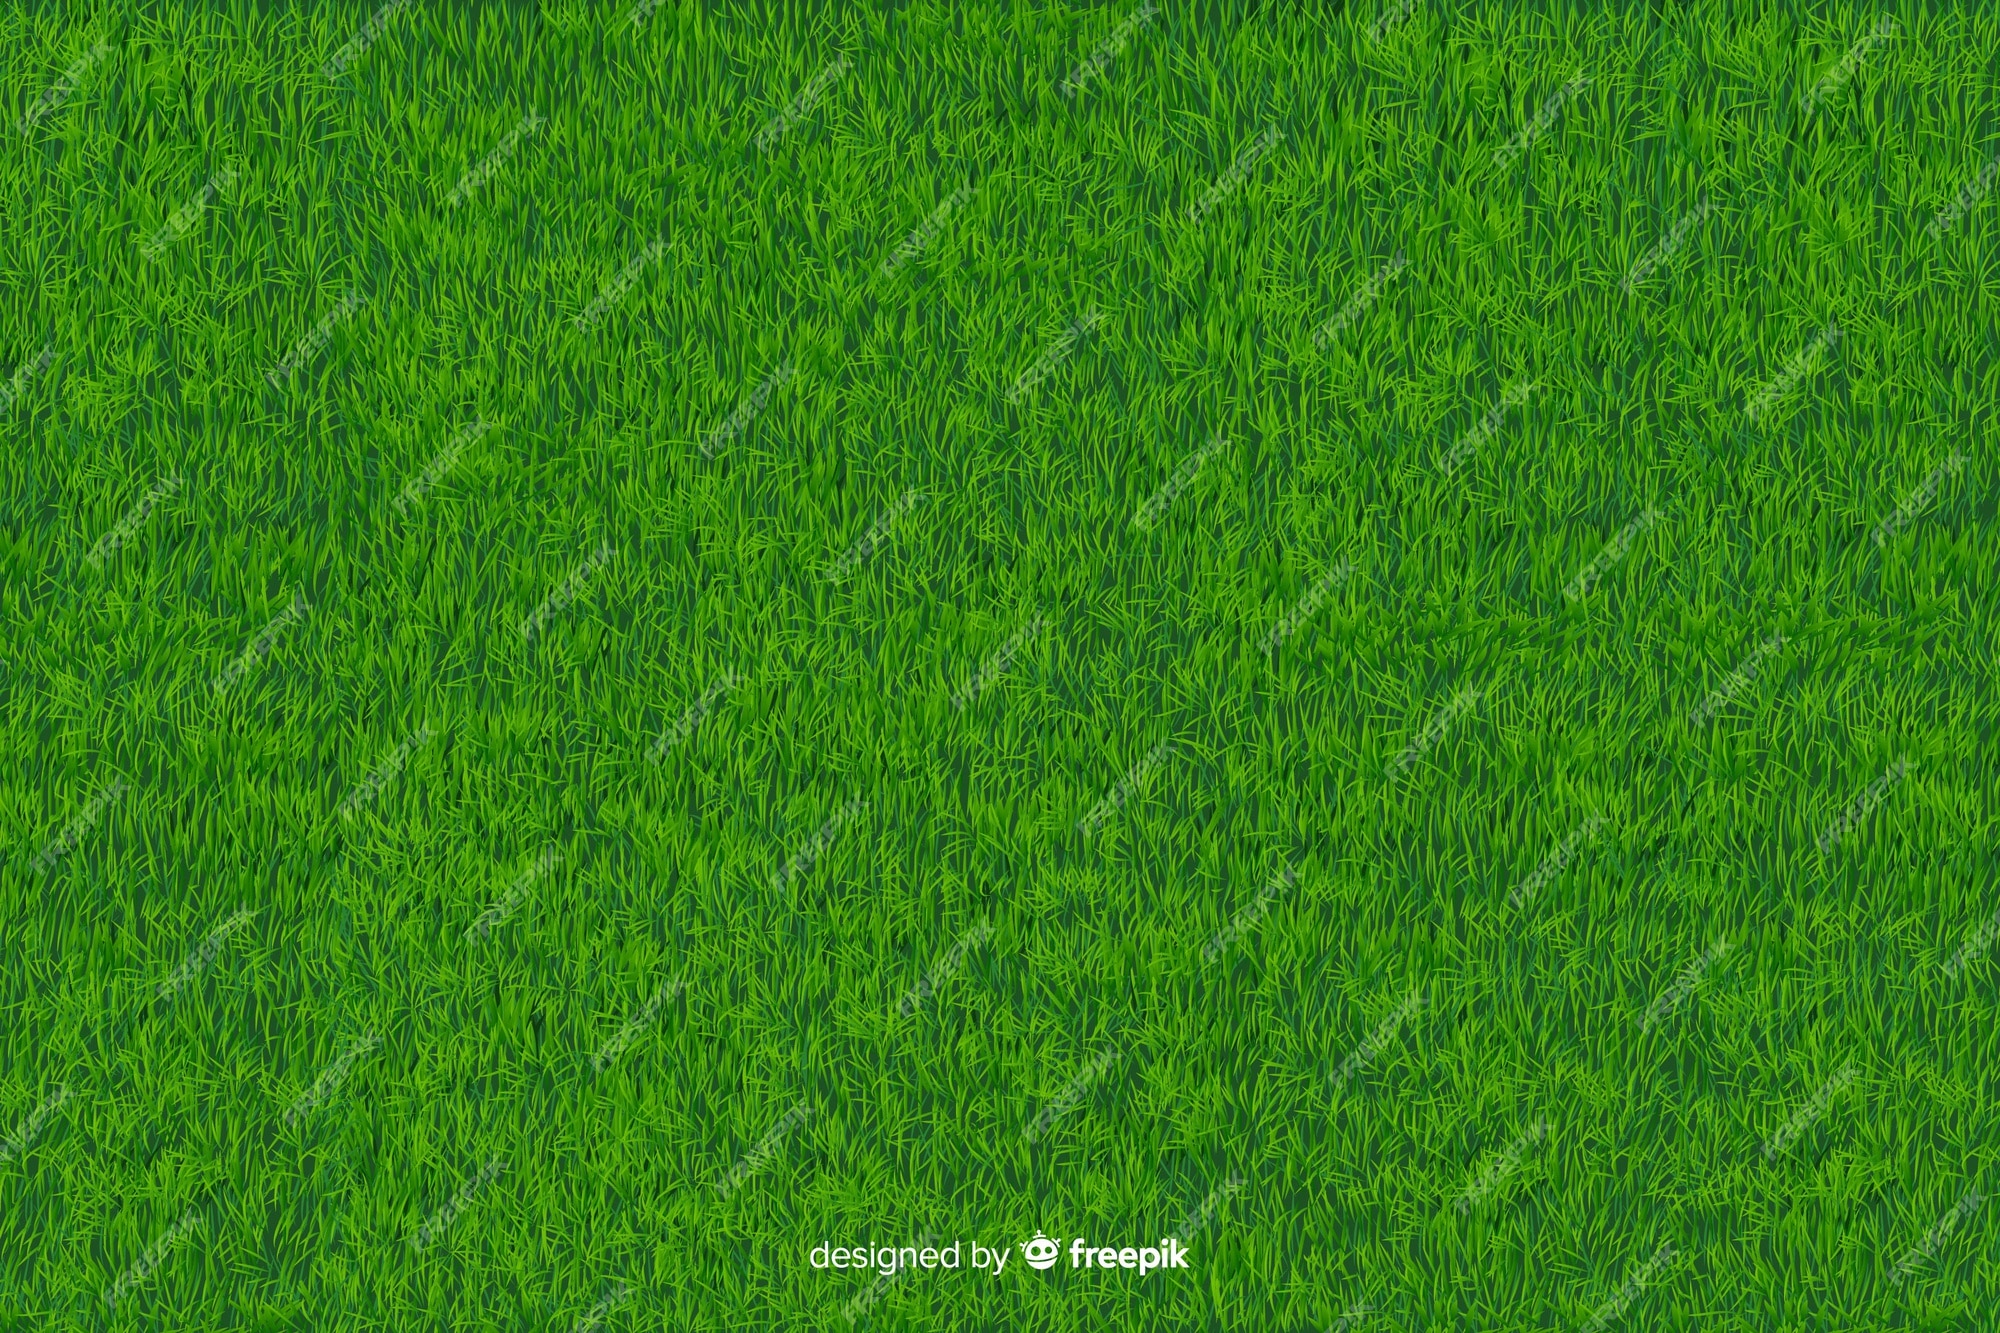 Cảm nhận một khoảng không gian mát mẻ với hình nền đầy cỏ xanh. Với chi tiết được thể hiện chân thật, bạn sẽ có cảm giác như đang đứng ngay tại chỗ trong căn phòng.